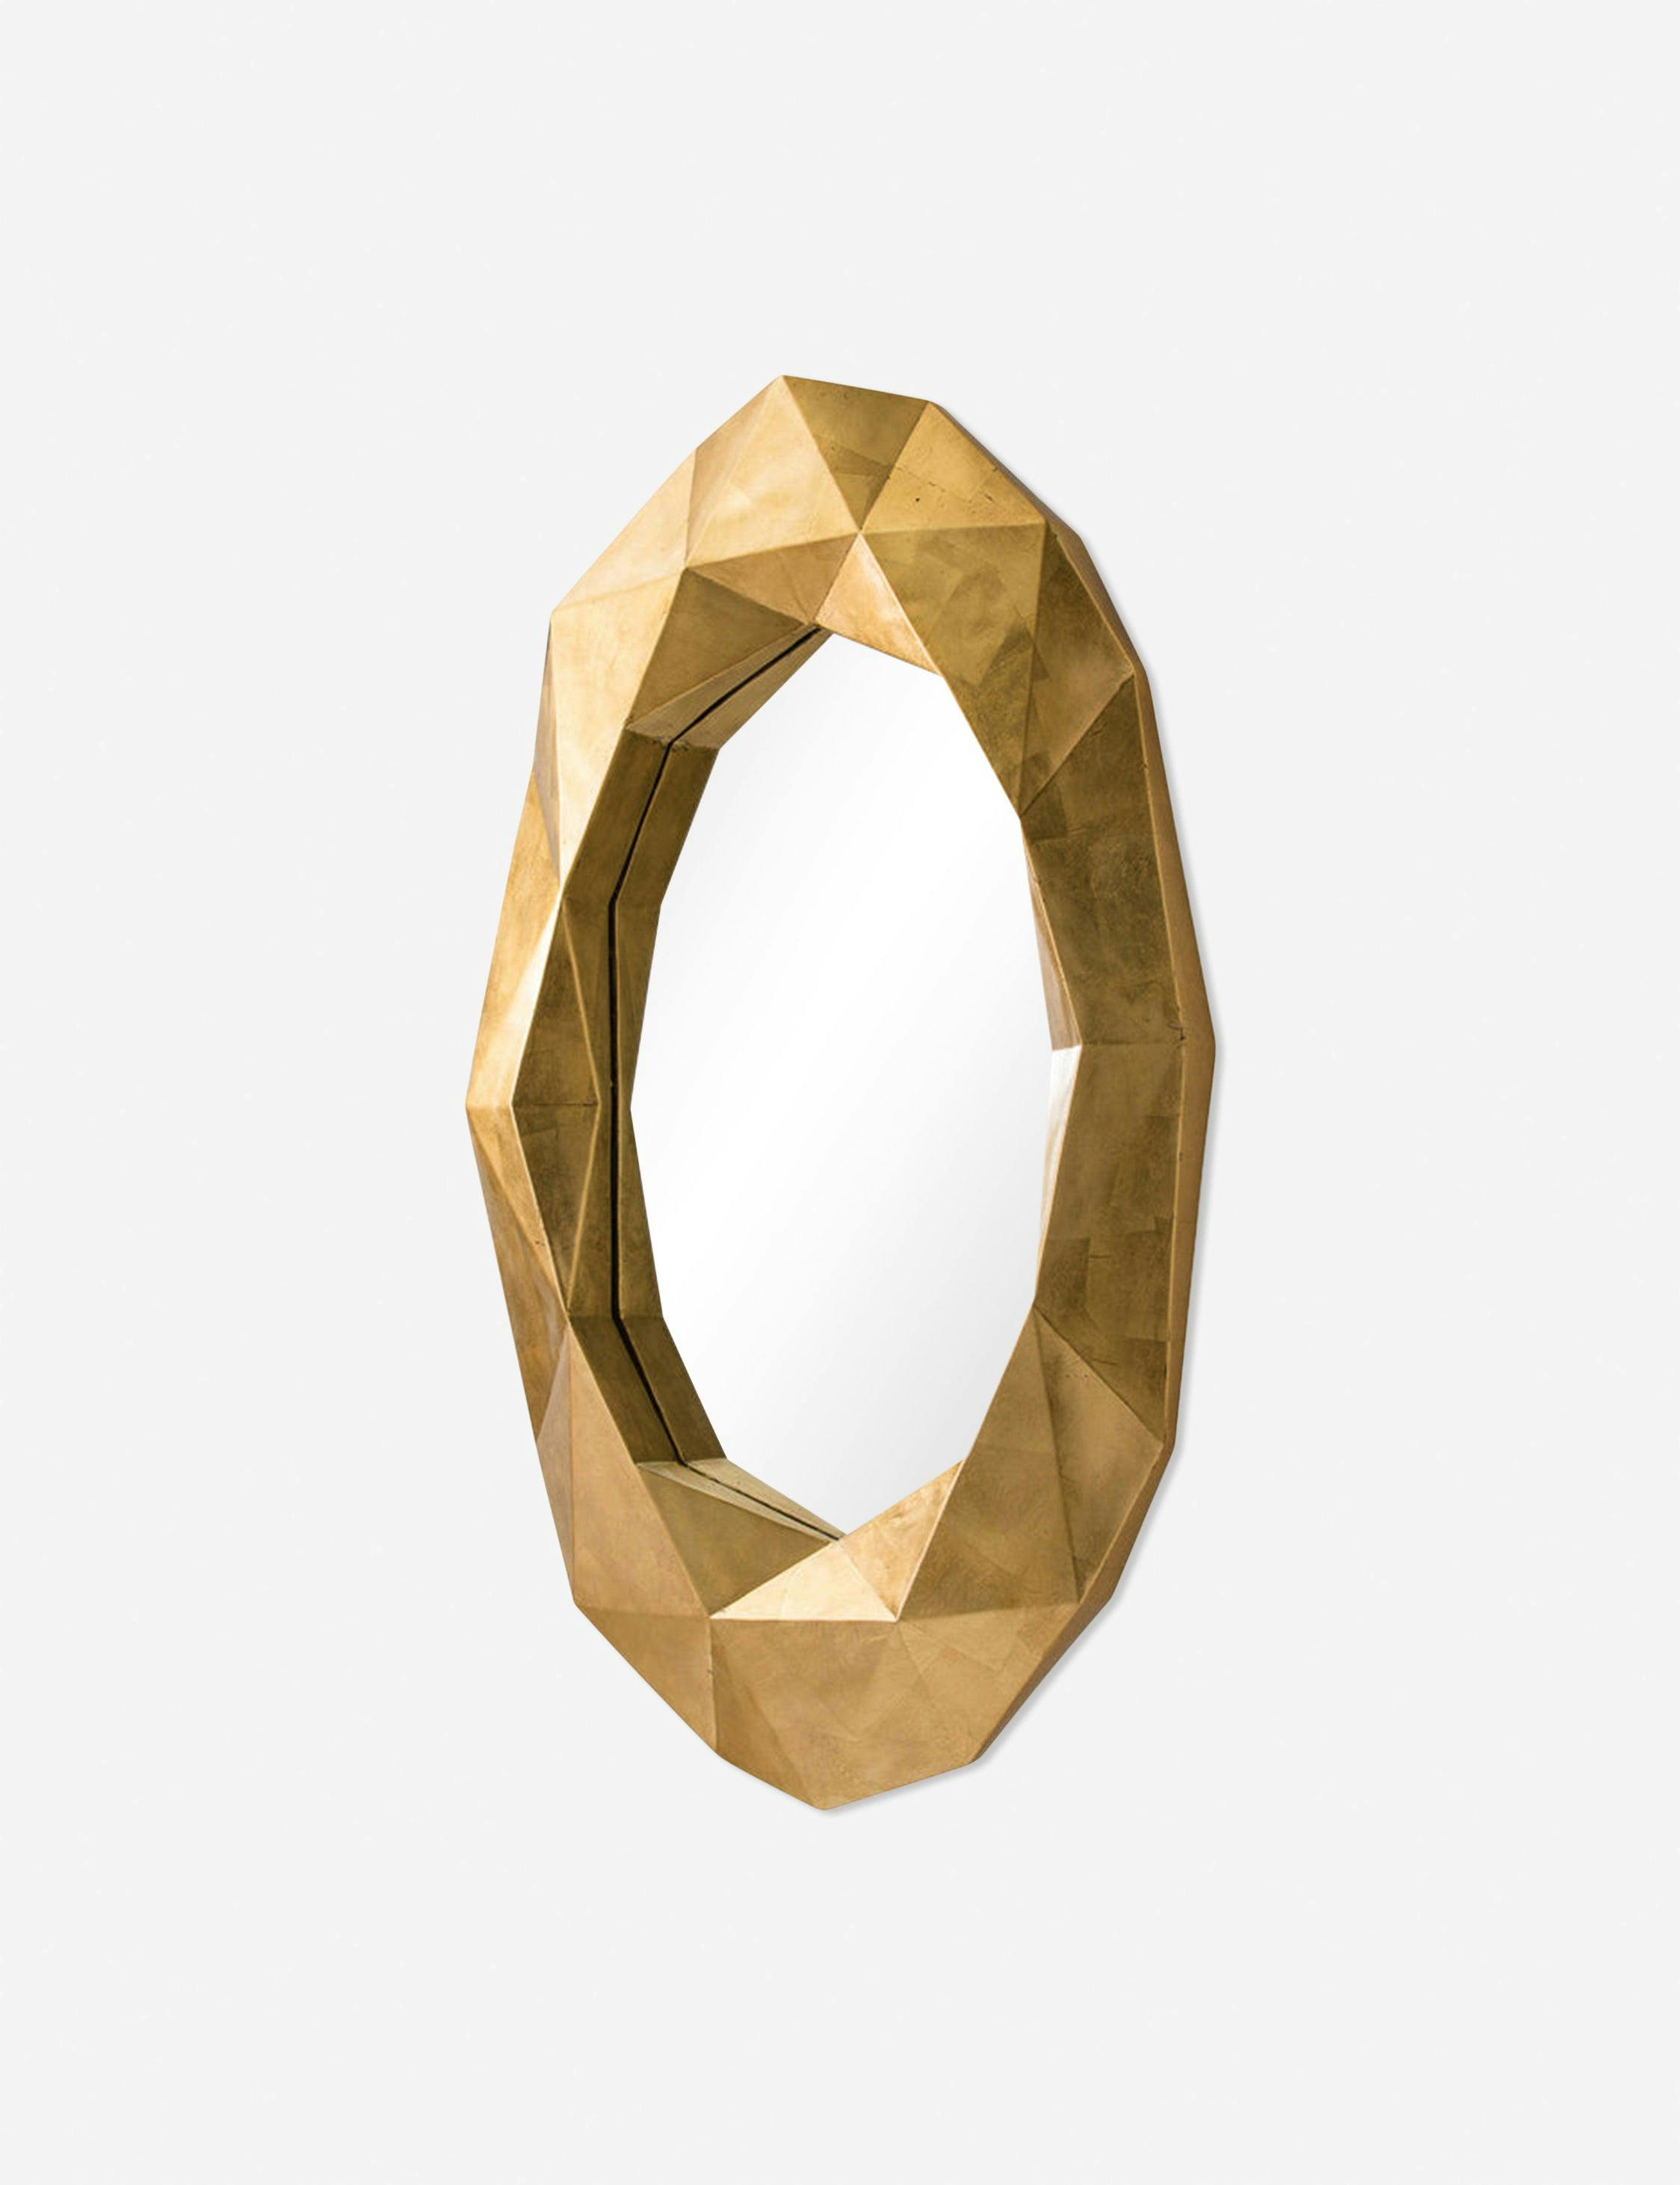 Arteriors Fallon Oval Mirror - Gold